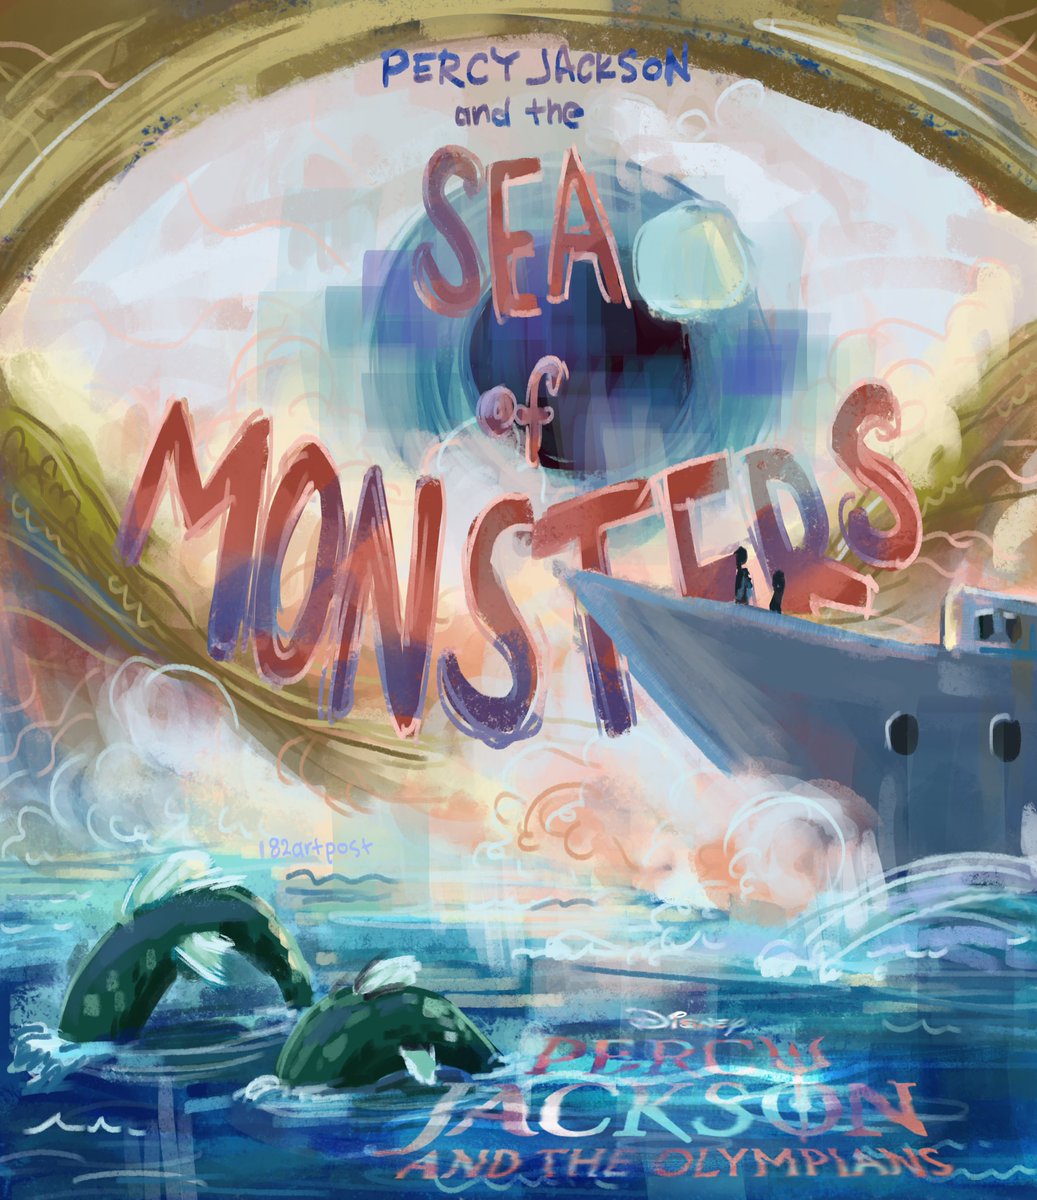 Percy Jackson and the Sea of Monsters #PercyJackson #PercyJacksonfanart